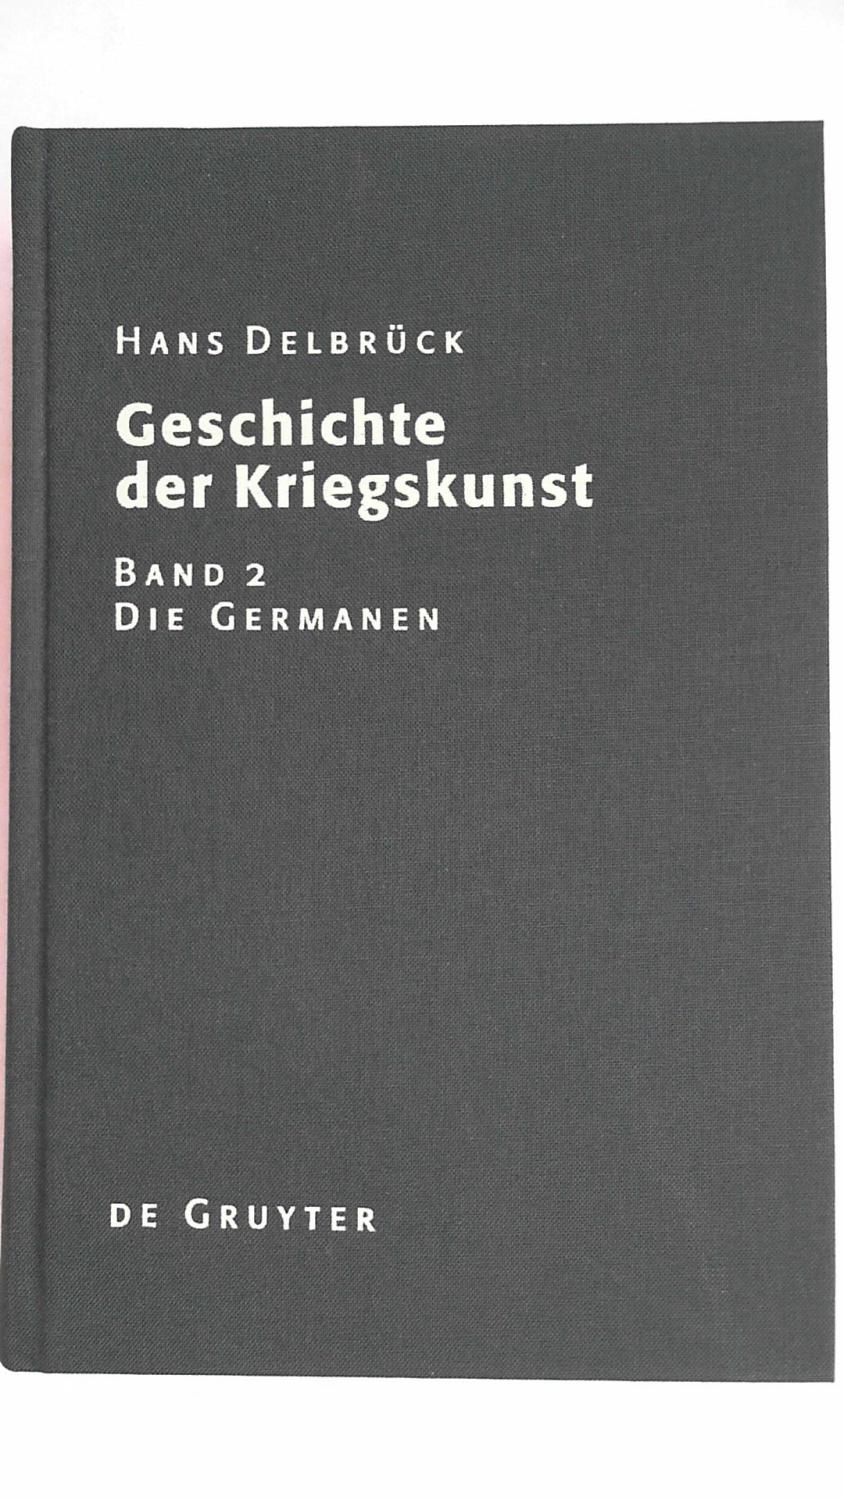 Geschichte der Kriegskunst im Rahmen der politischen Geschichte; Teil: Band. 2., Die Germanen - Dellbrück, Hans